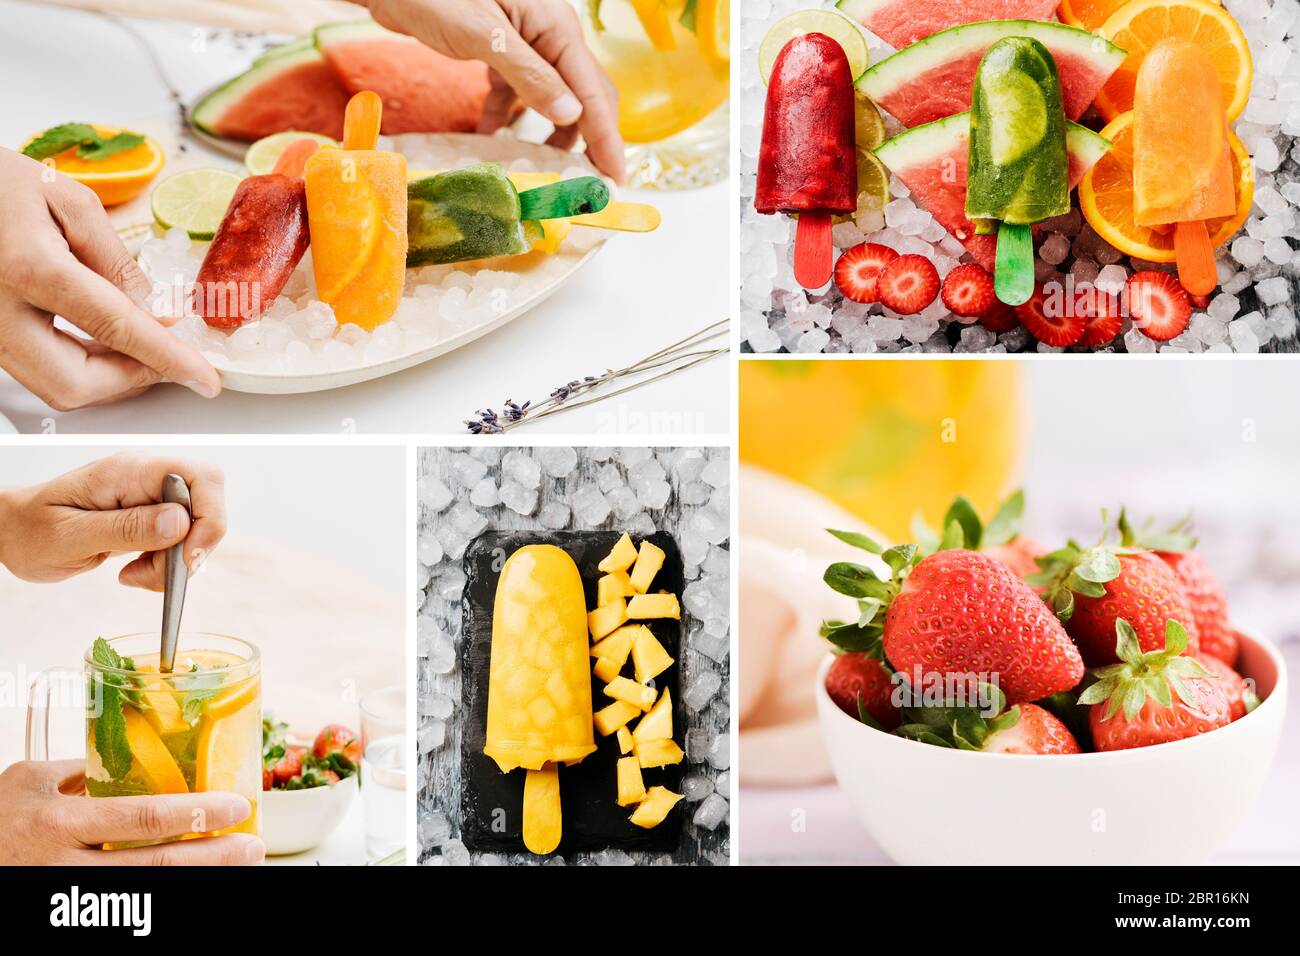 Eine Collage aus einigen Bildern von Obst und verschiedenen hausgemachten natürlichen Eis Pops mit natürlichen Fruchtsäften und Stück Obst gemacht Stockfoto